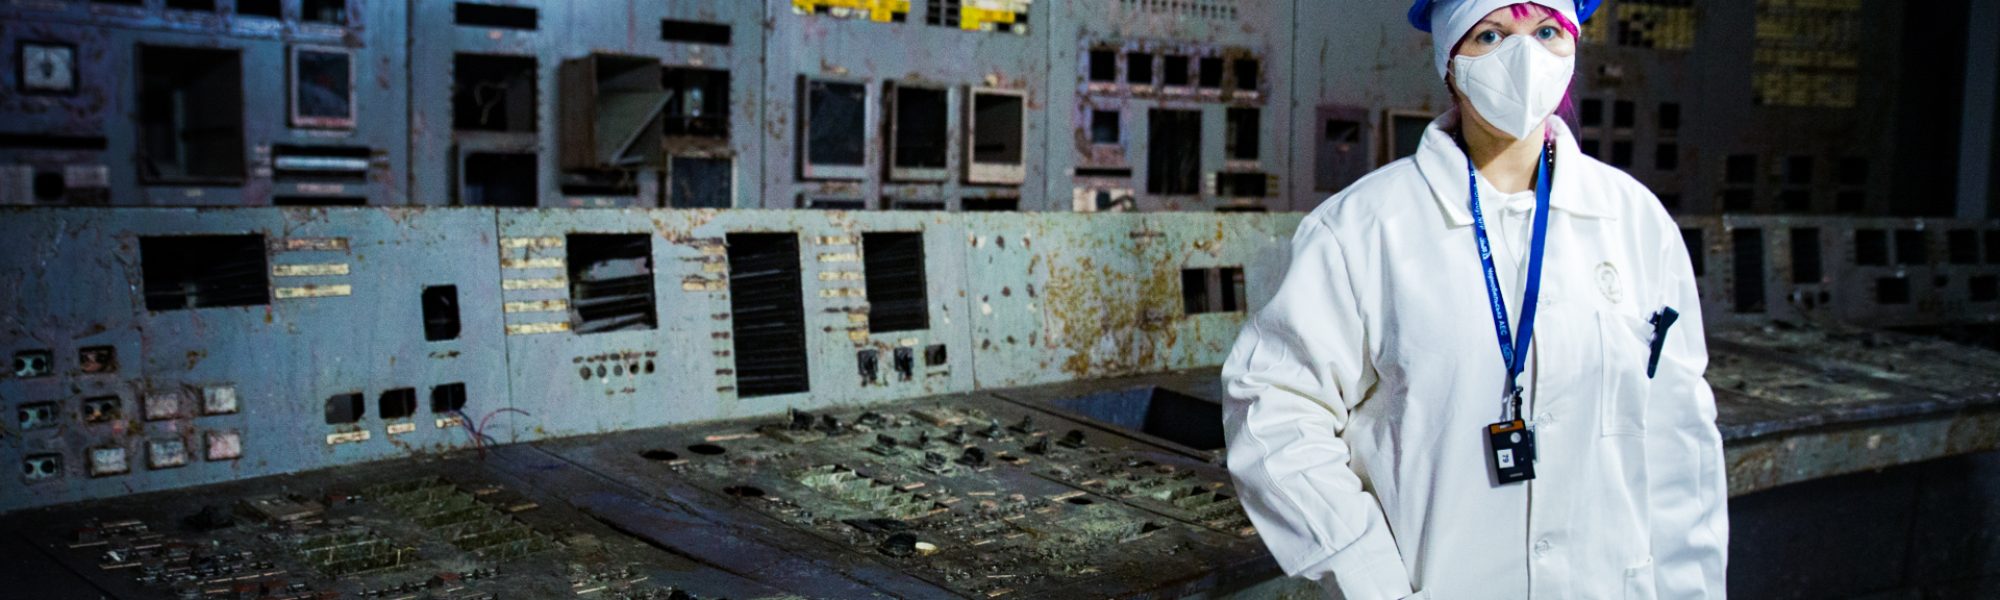 Francesca Dani nella control room del reattore 4 di Chernobyl